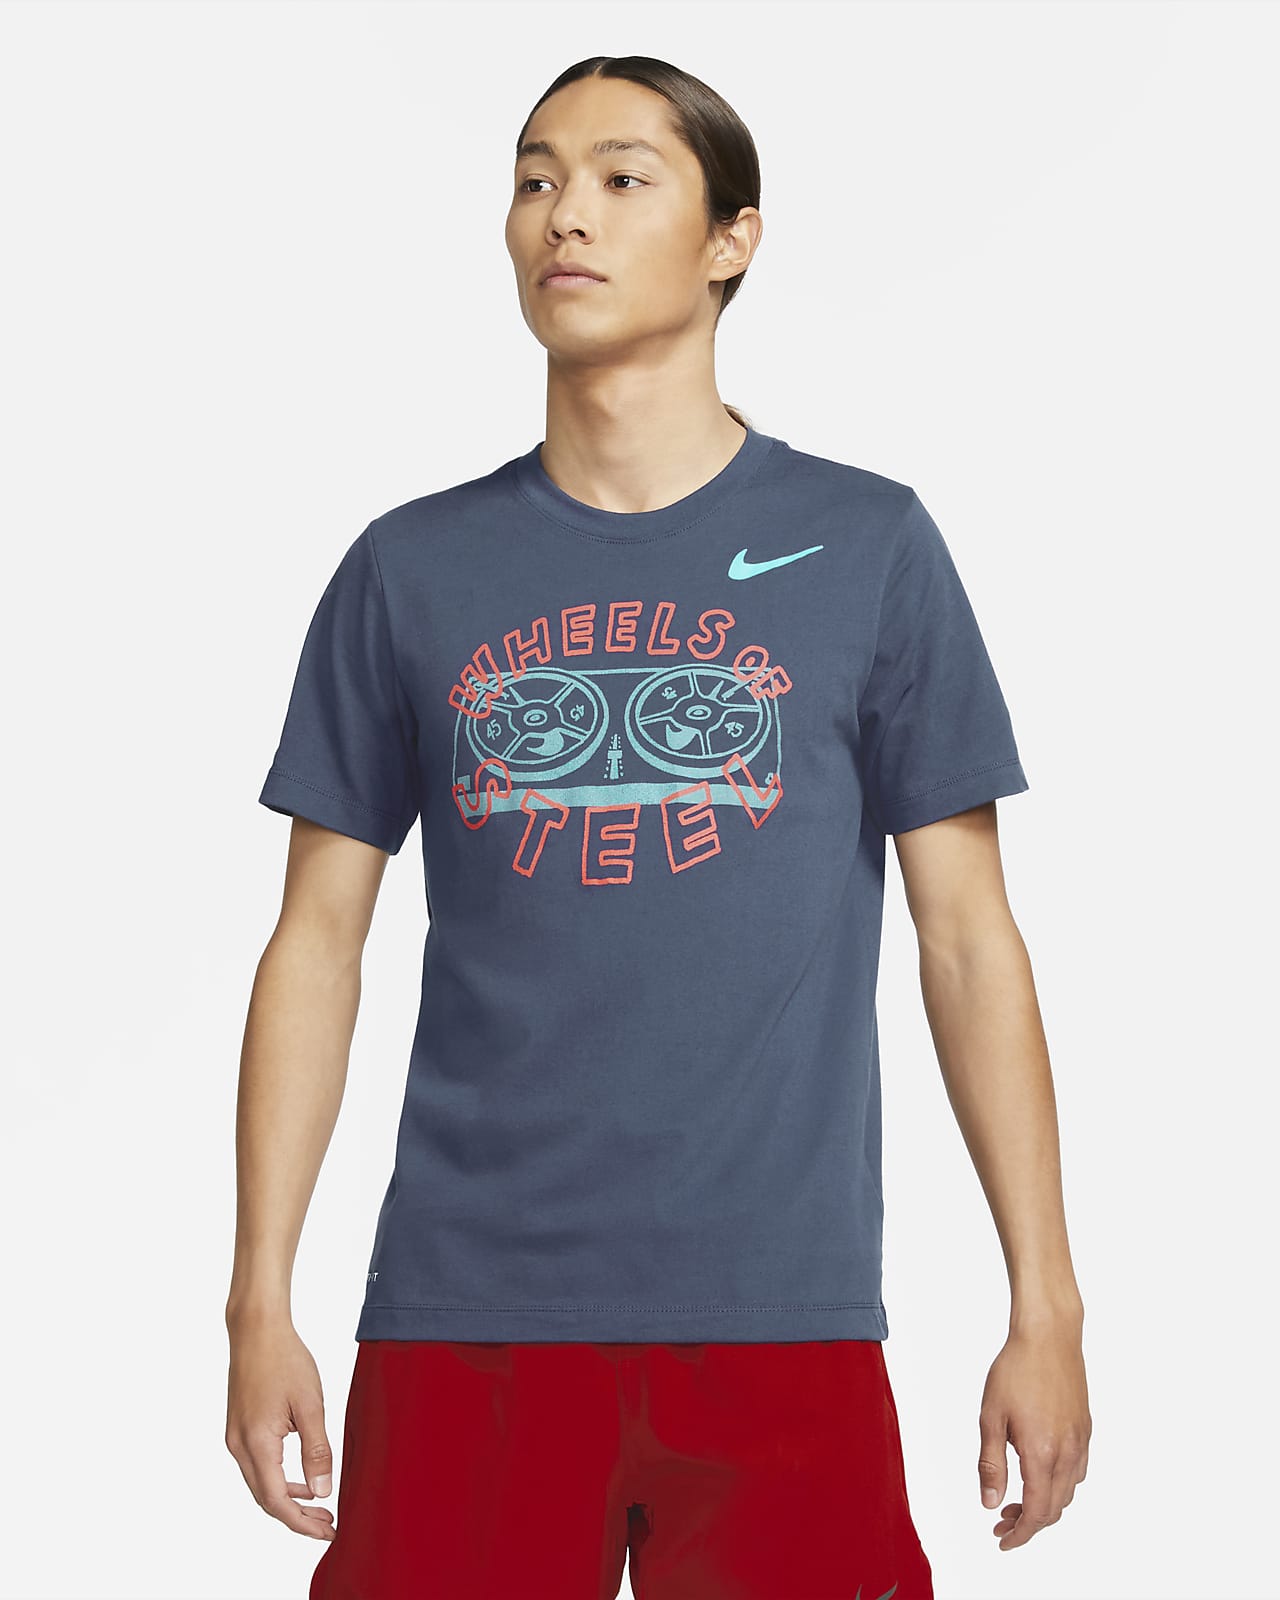 Nike Dri-FIT Men's Training T-Shirt 